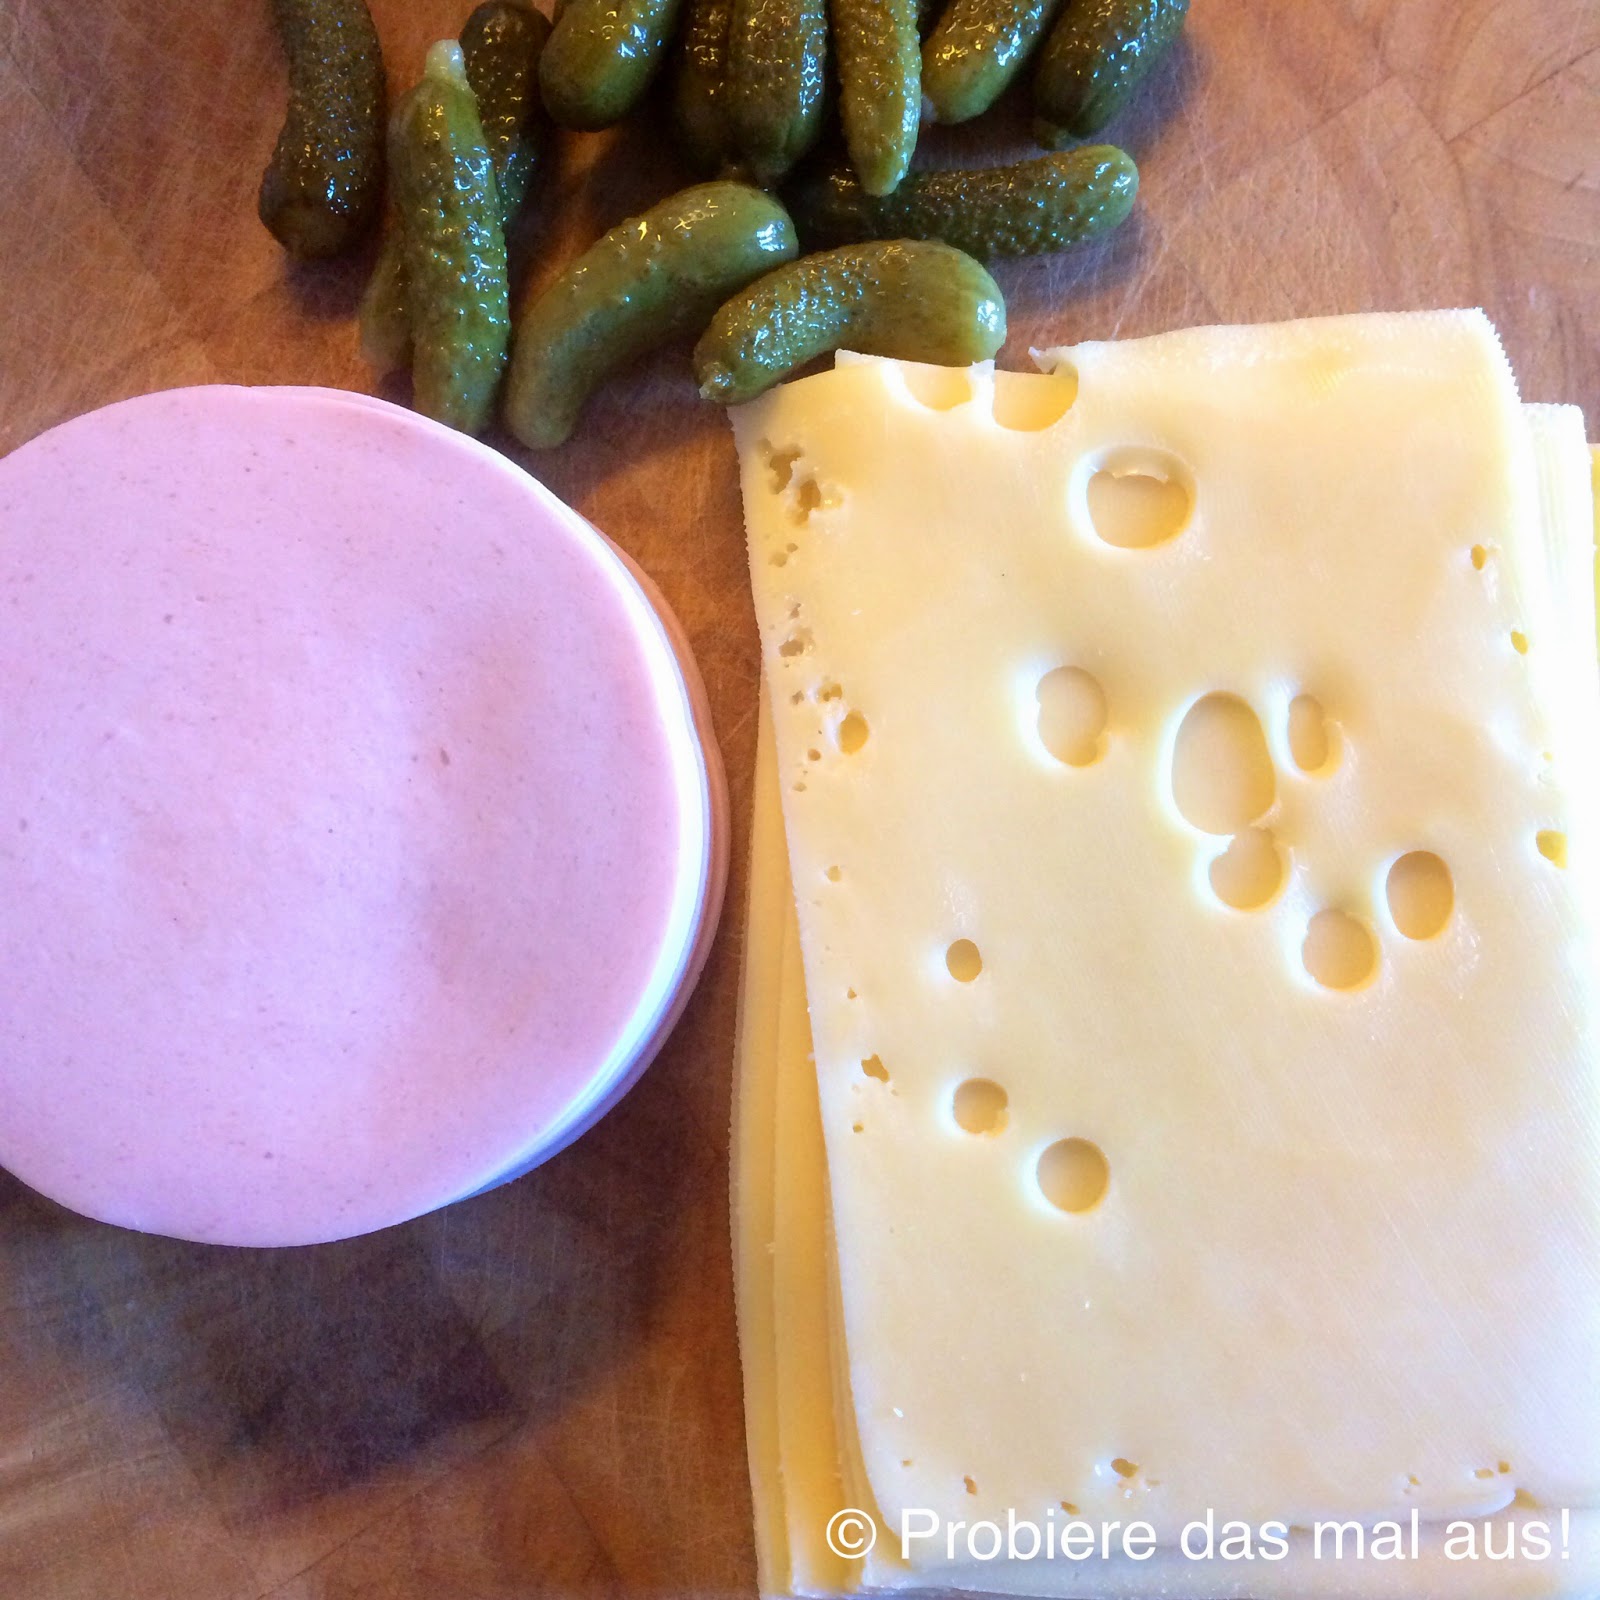 Probiere das mal aus!: Käse-Wurst-Salat